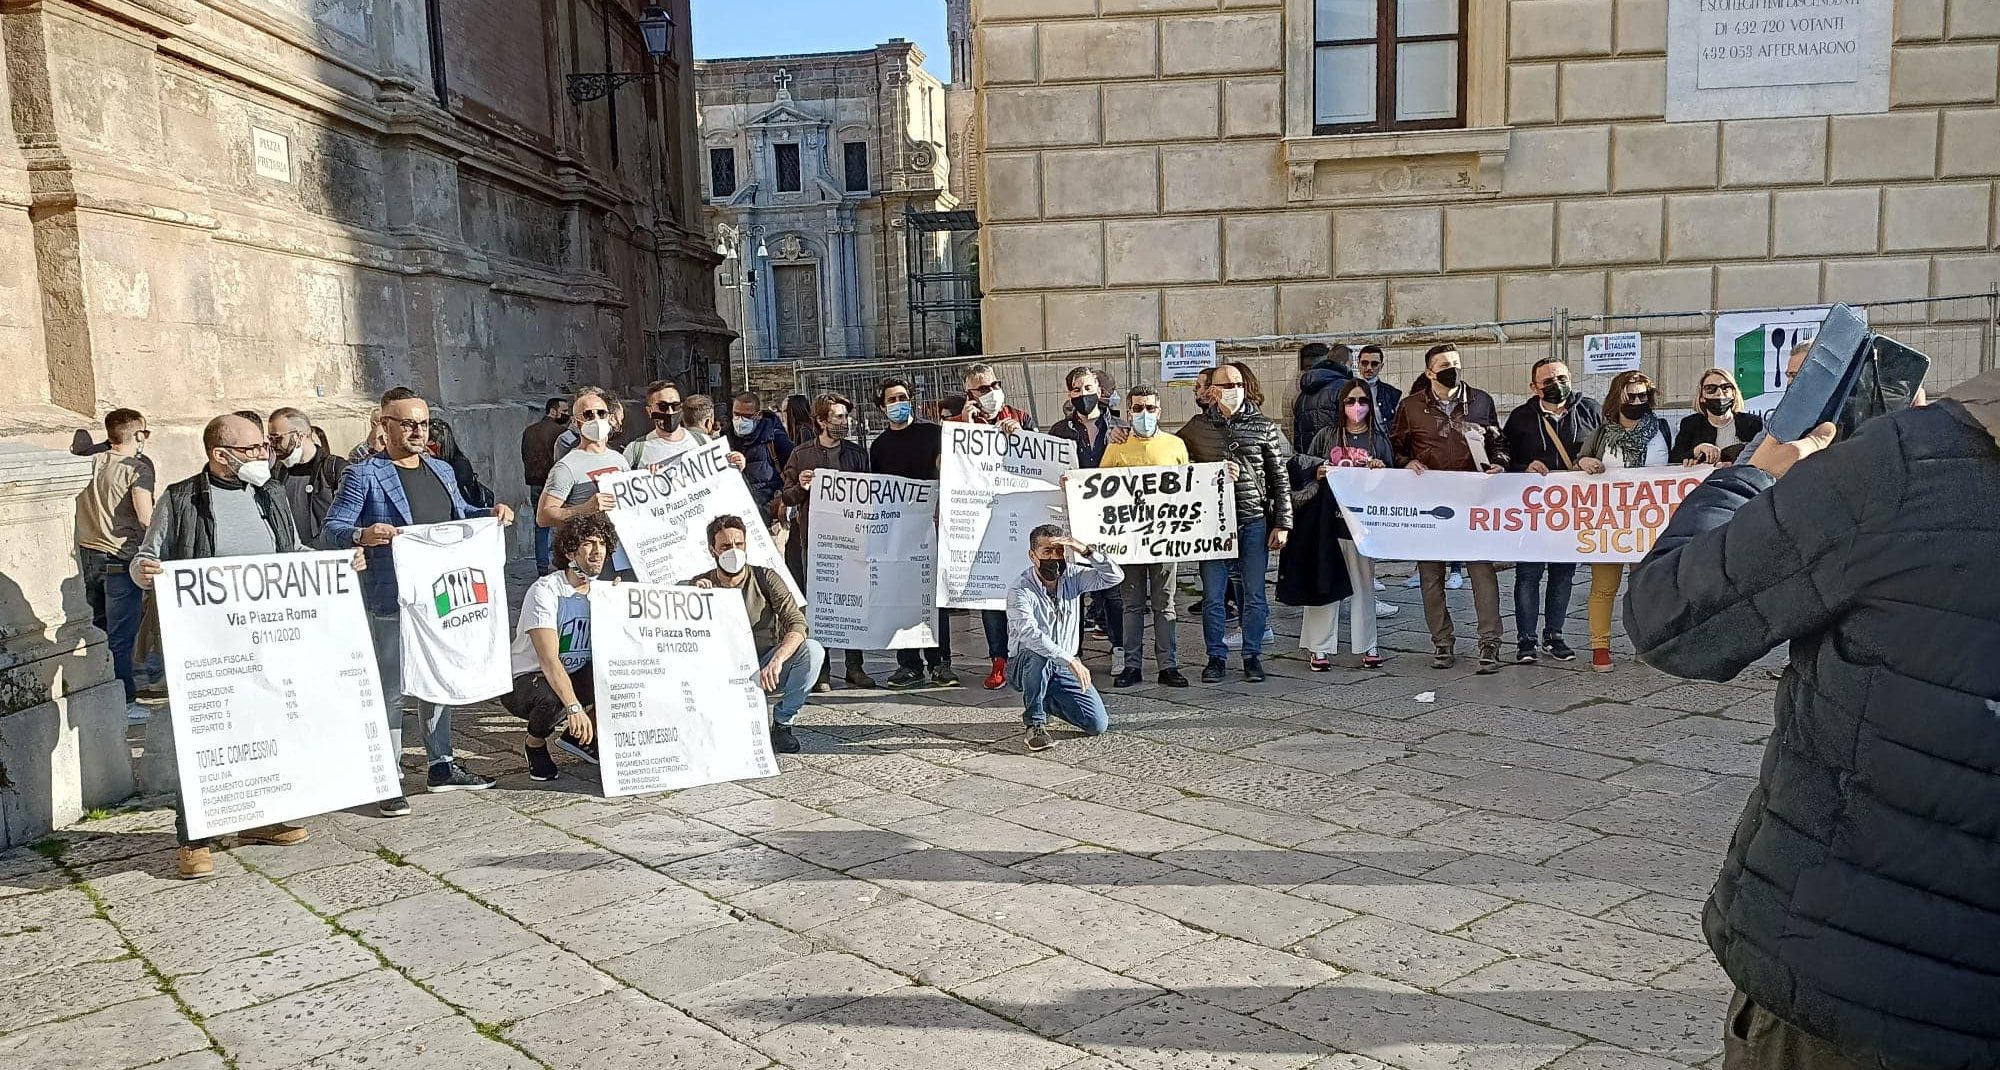  La protesta dei ristoratori a due passi dal mare di Montalbano